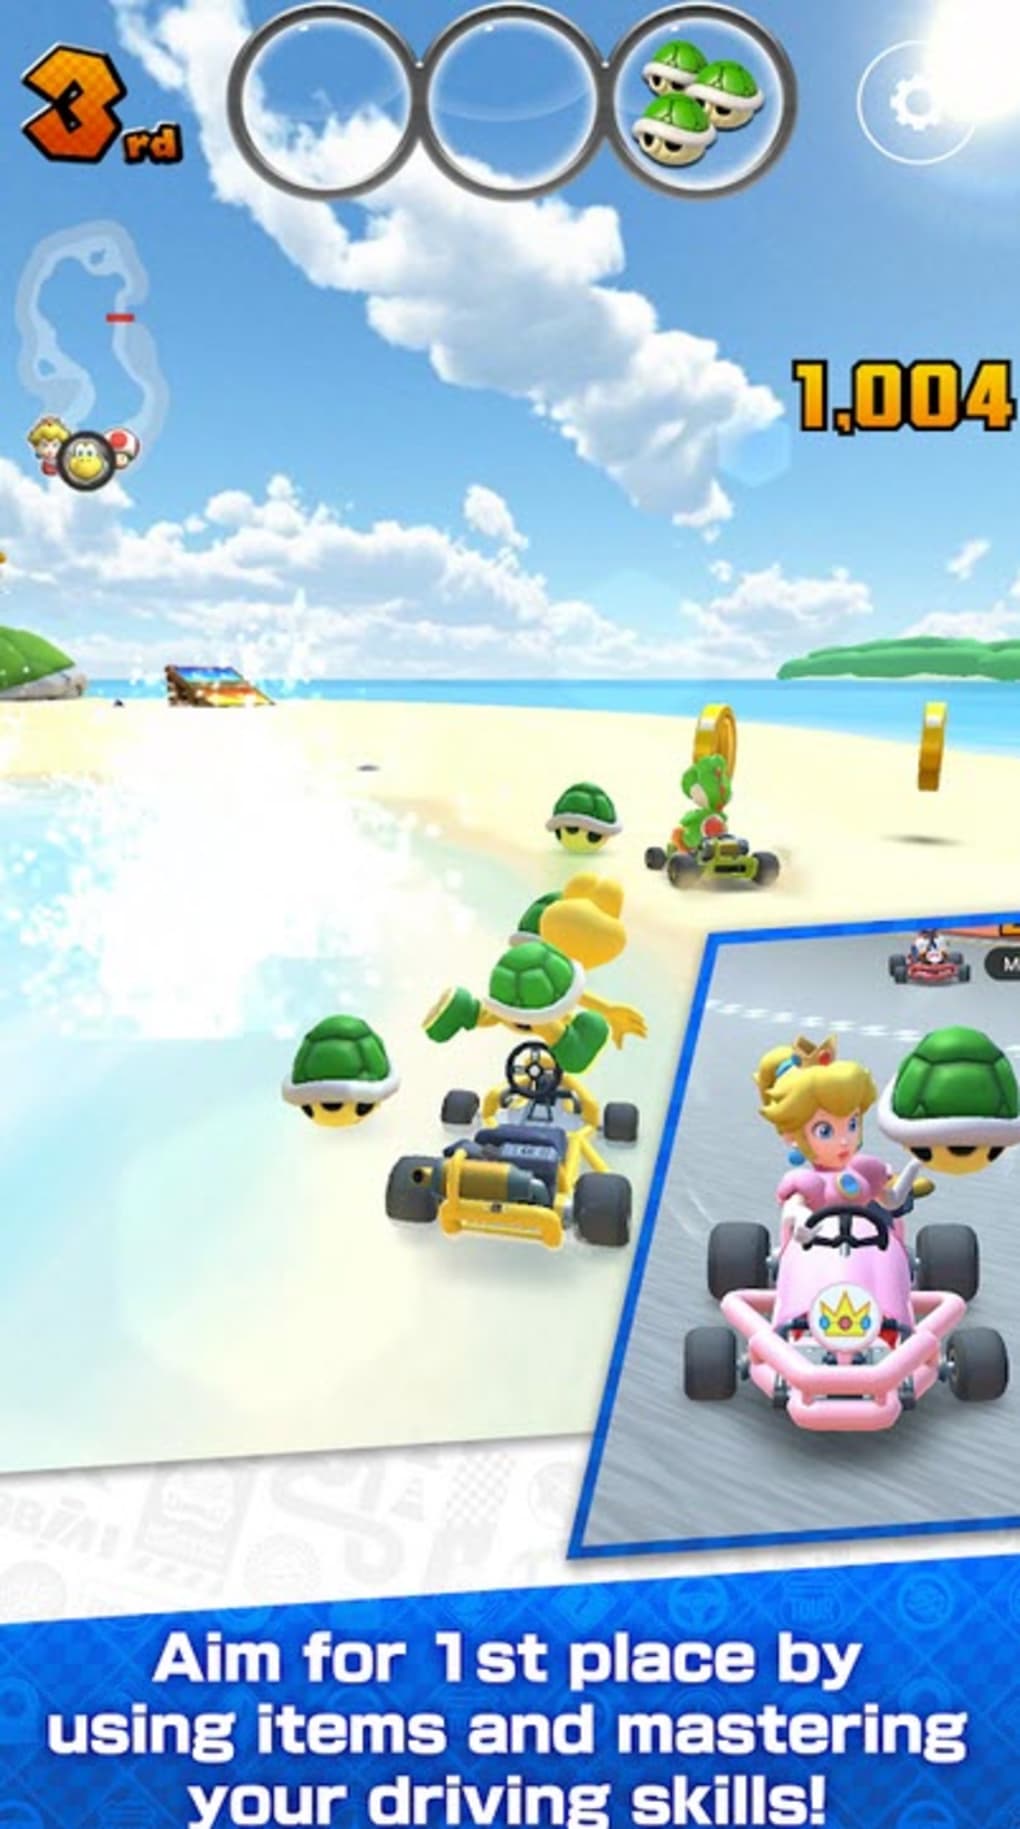 Mario Kart Tour: como baixar o jogo grátis para iPhone e Android